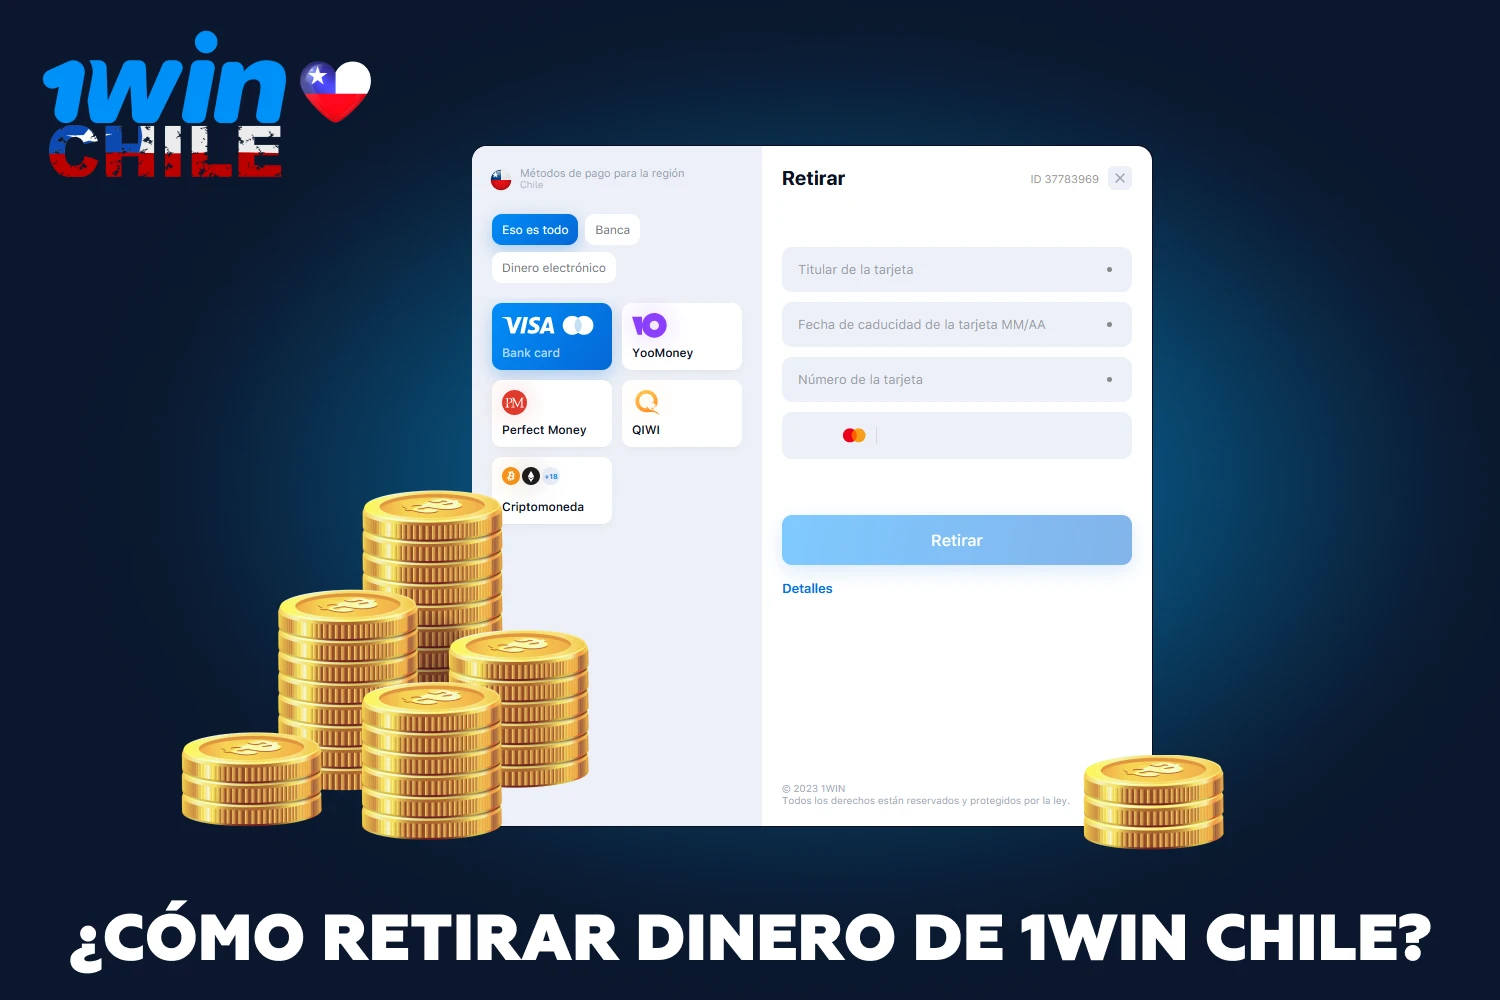 Después de ganar, los jugadores de Chile pueden retirar fondos fácilmente desde el sitio web de 1win